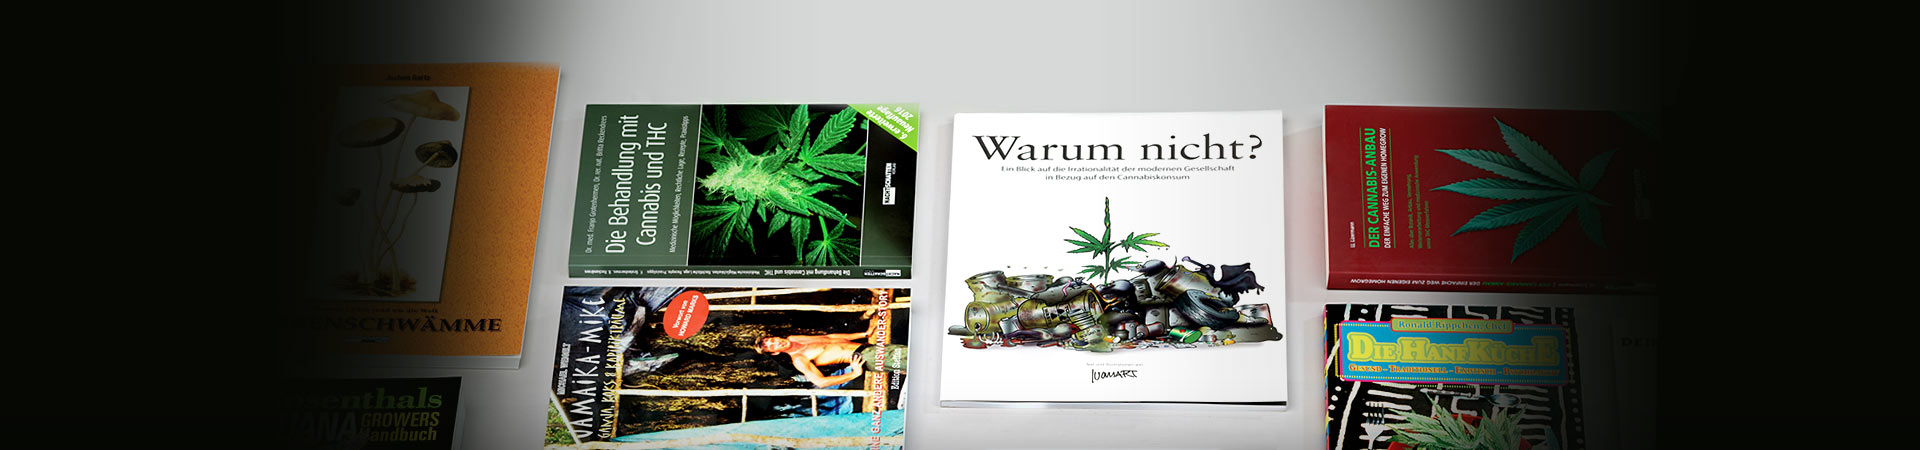 Bücher und DVDs über Cannabis sowie psychoaktive Substanzen